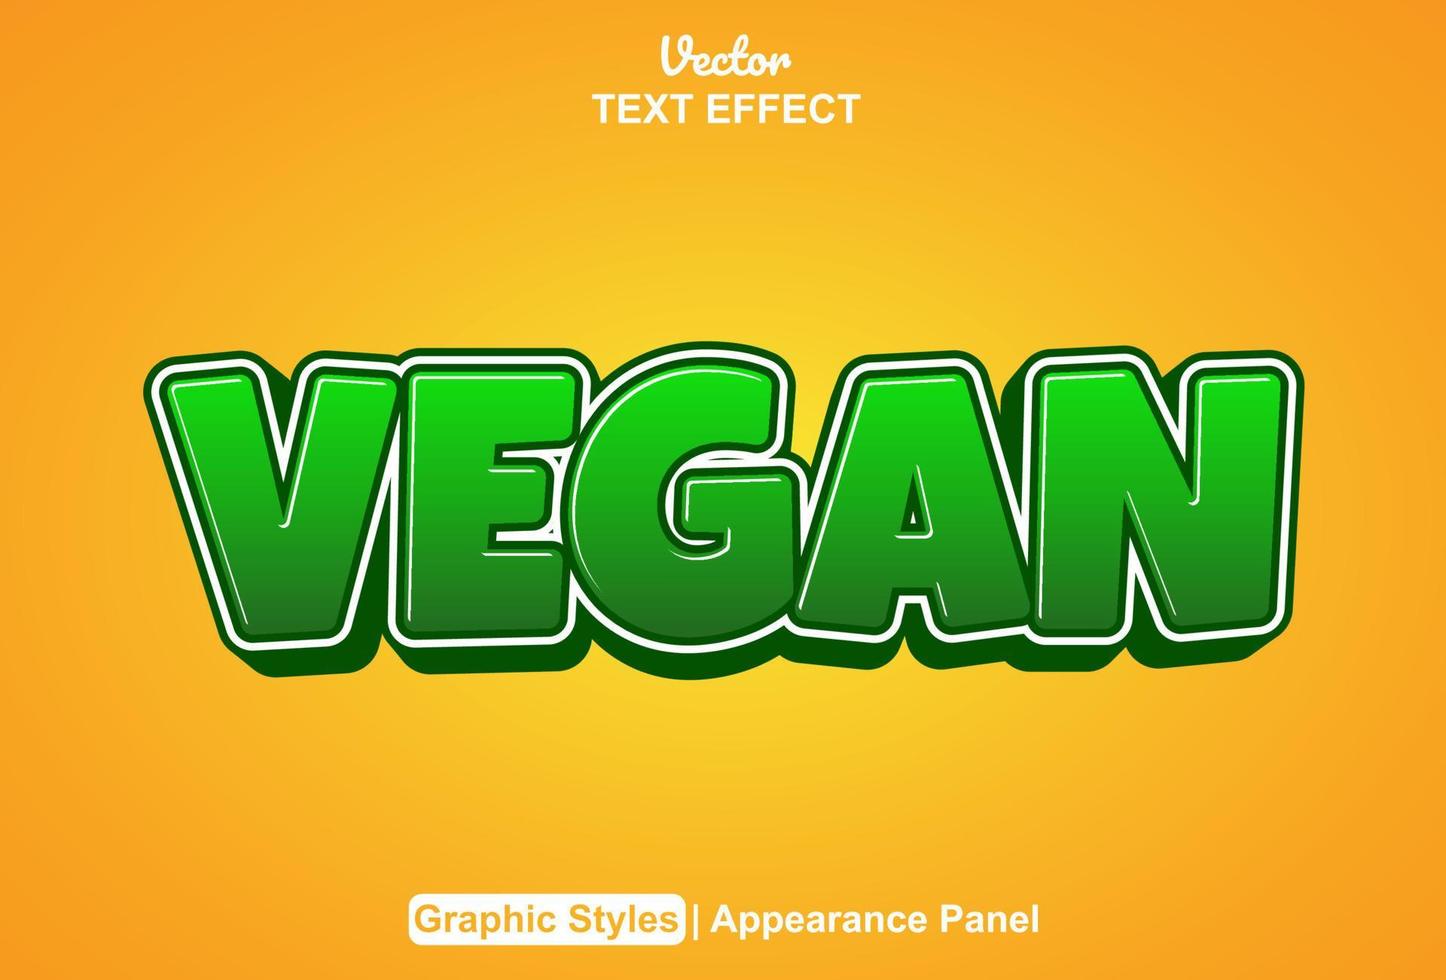 veganer texteffekt mit grafikstil und bearbeitbar. vektor